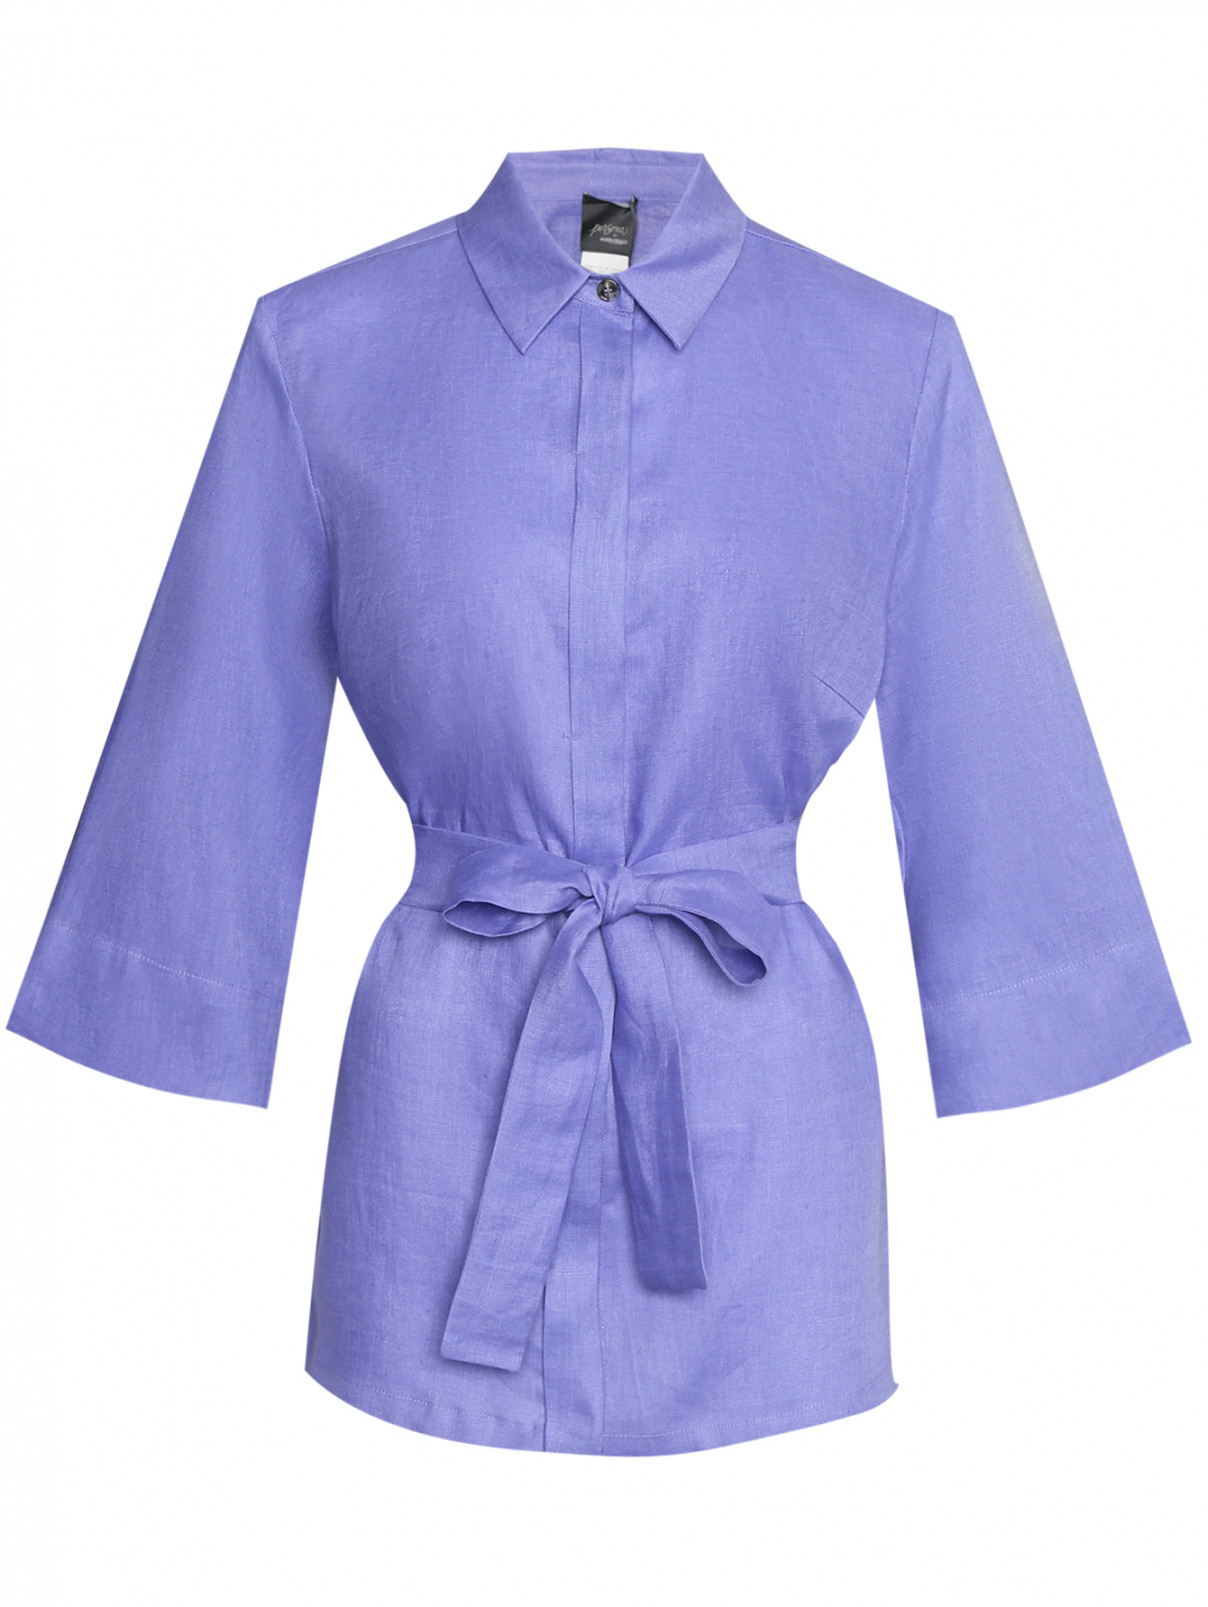 Блуза из льна с поясом Persona by Marina Rinaldi  –  Общий вид  – Цвет:  Фиолетовый